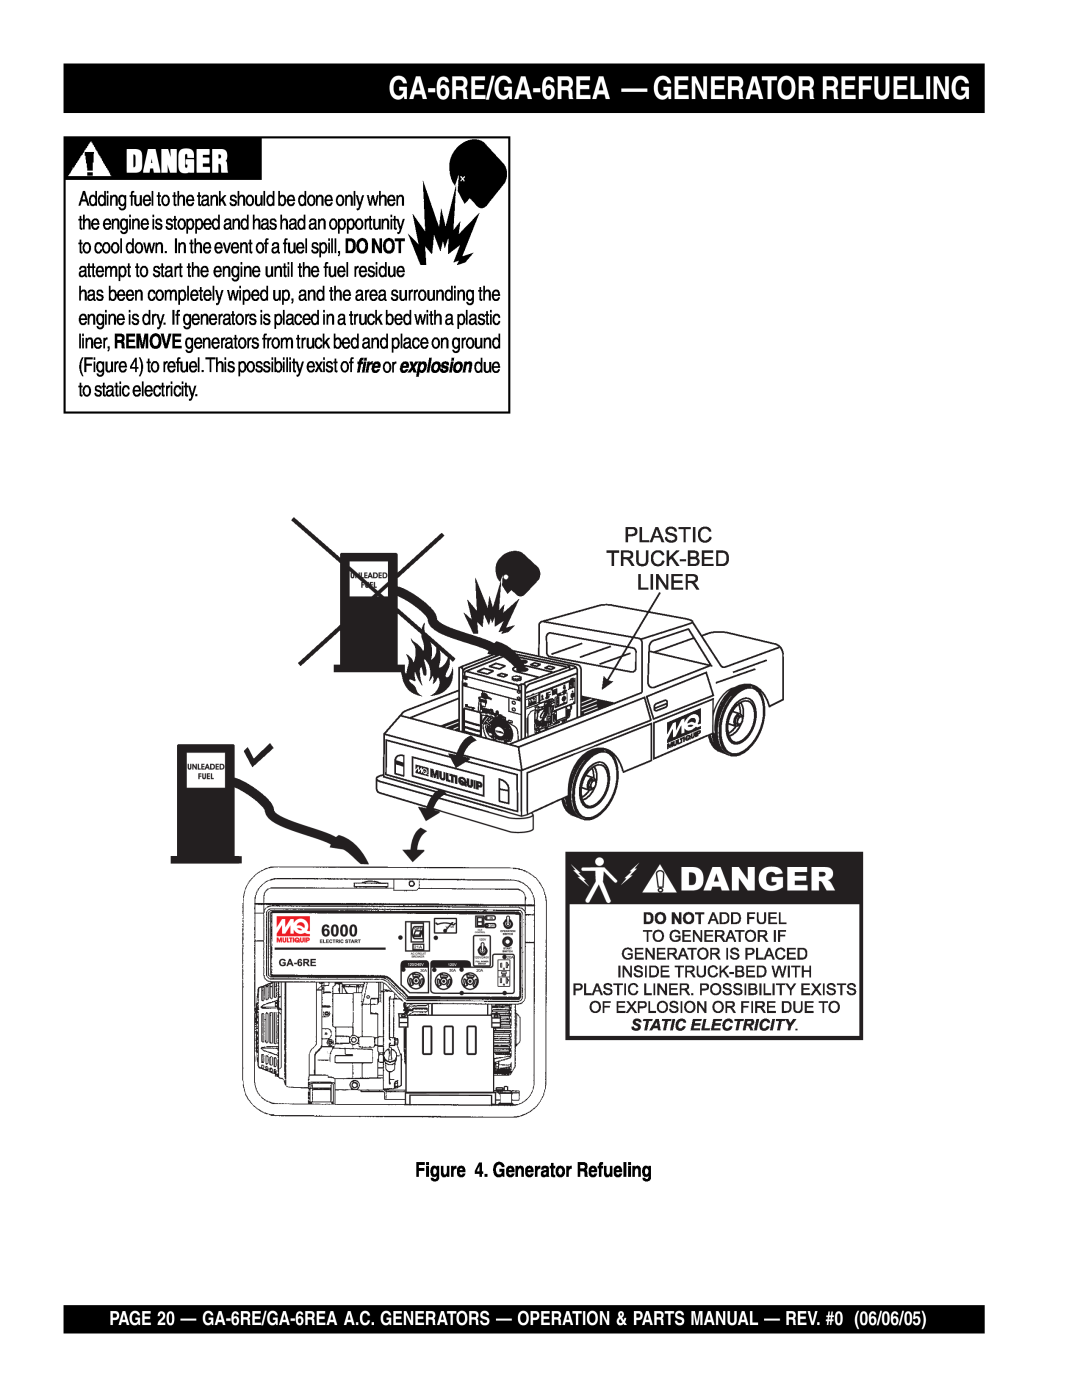 Multiquip manual GA-6RE/GA-6REA- GENERATOR REFUELING, Danger, Generator Refueling 